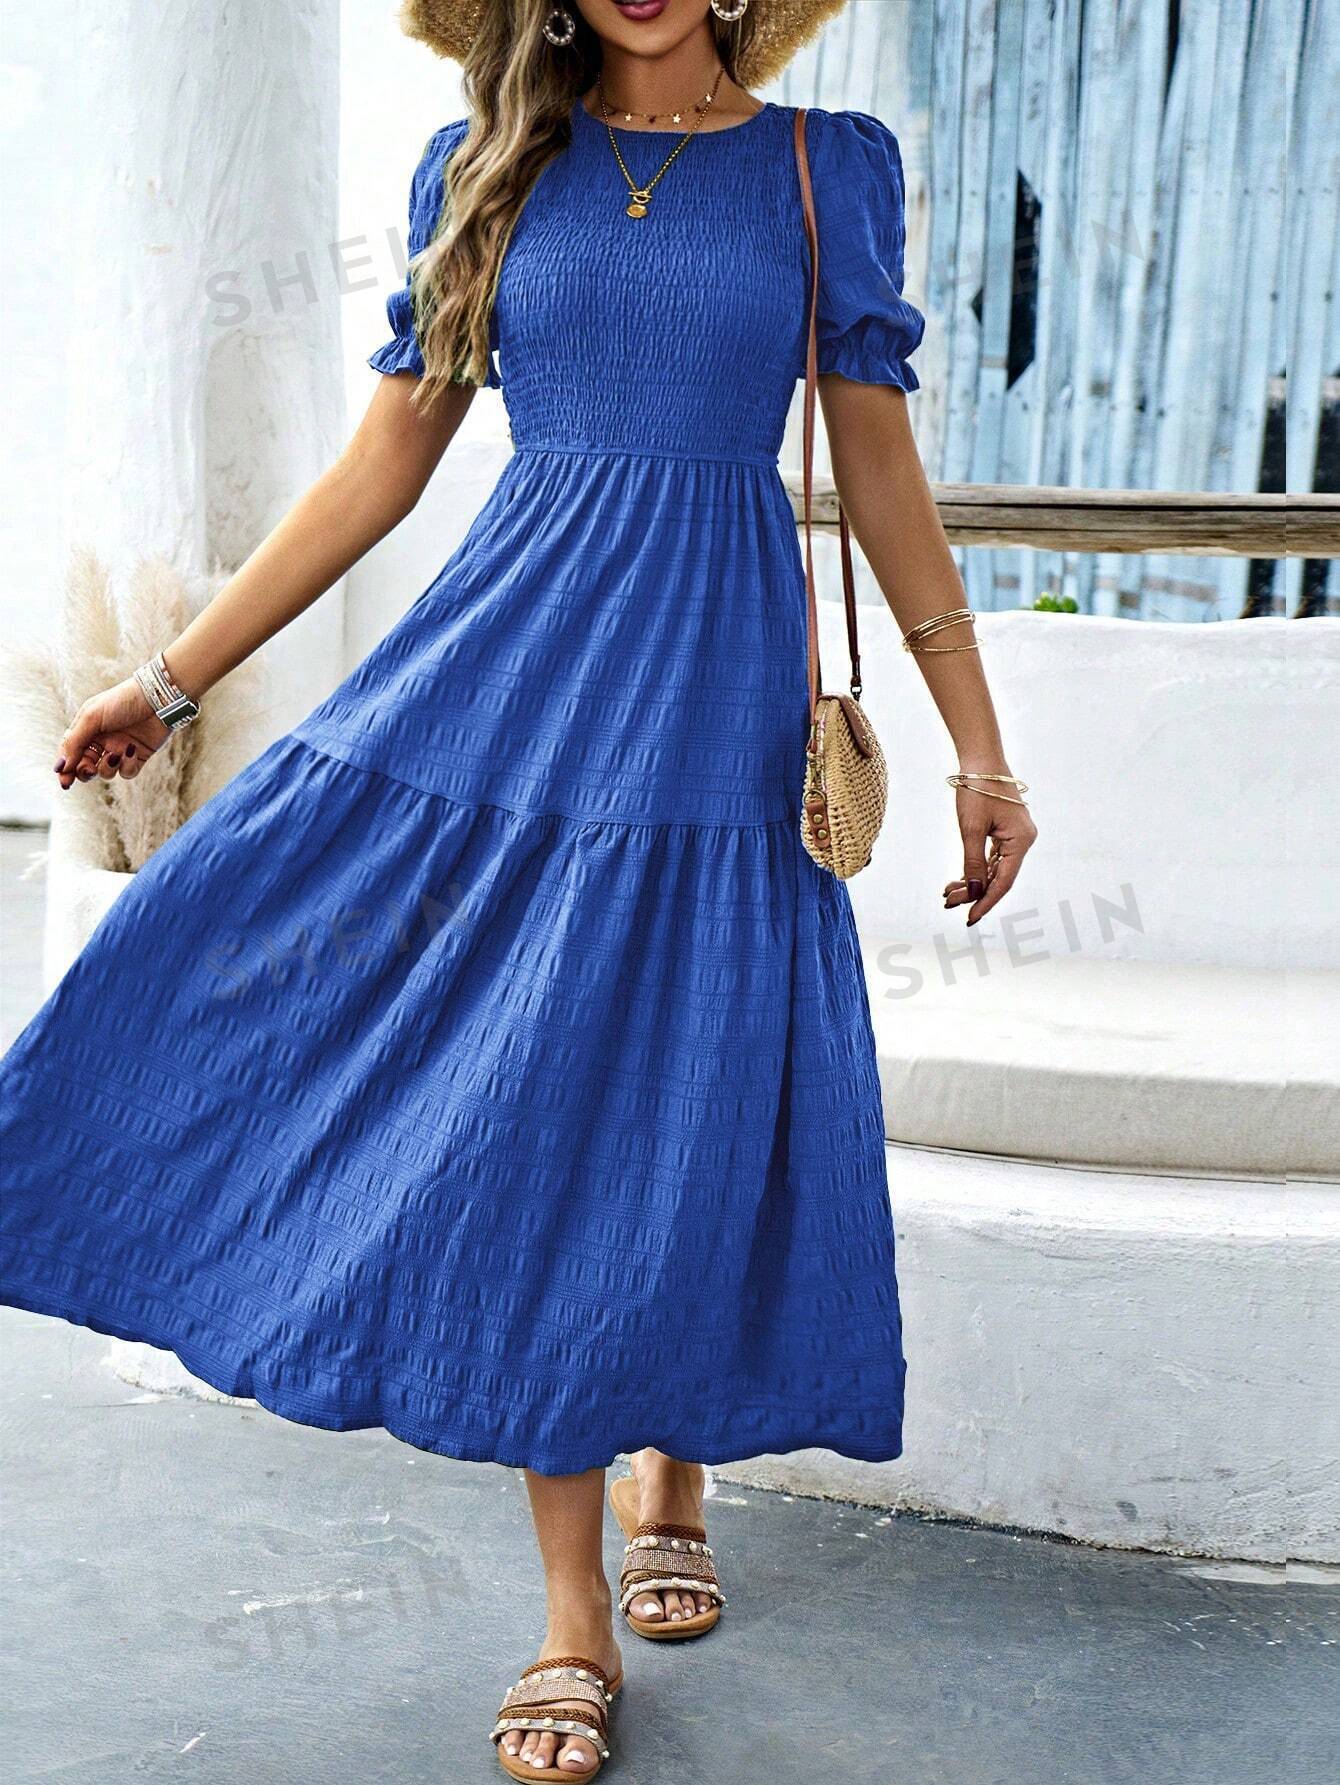 shein vcay женское платье с круглым вырезом и короткими рукавами пузырьками с цветочным принтом синий SHEIN VCAY женское свободное платье с круглым вырезом и короткими рукавами-фонариками, королевский синий